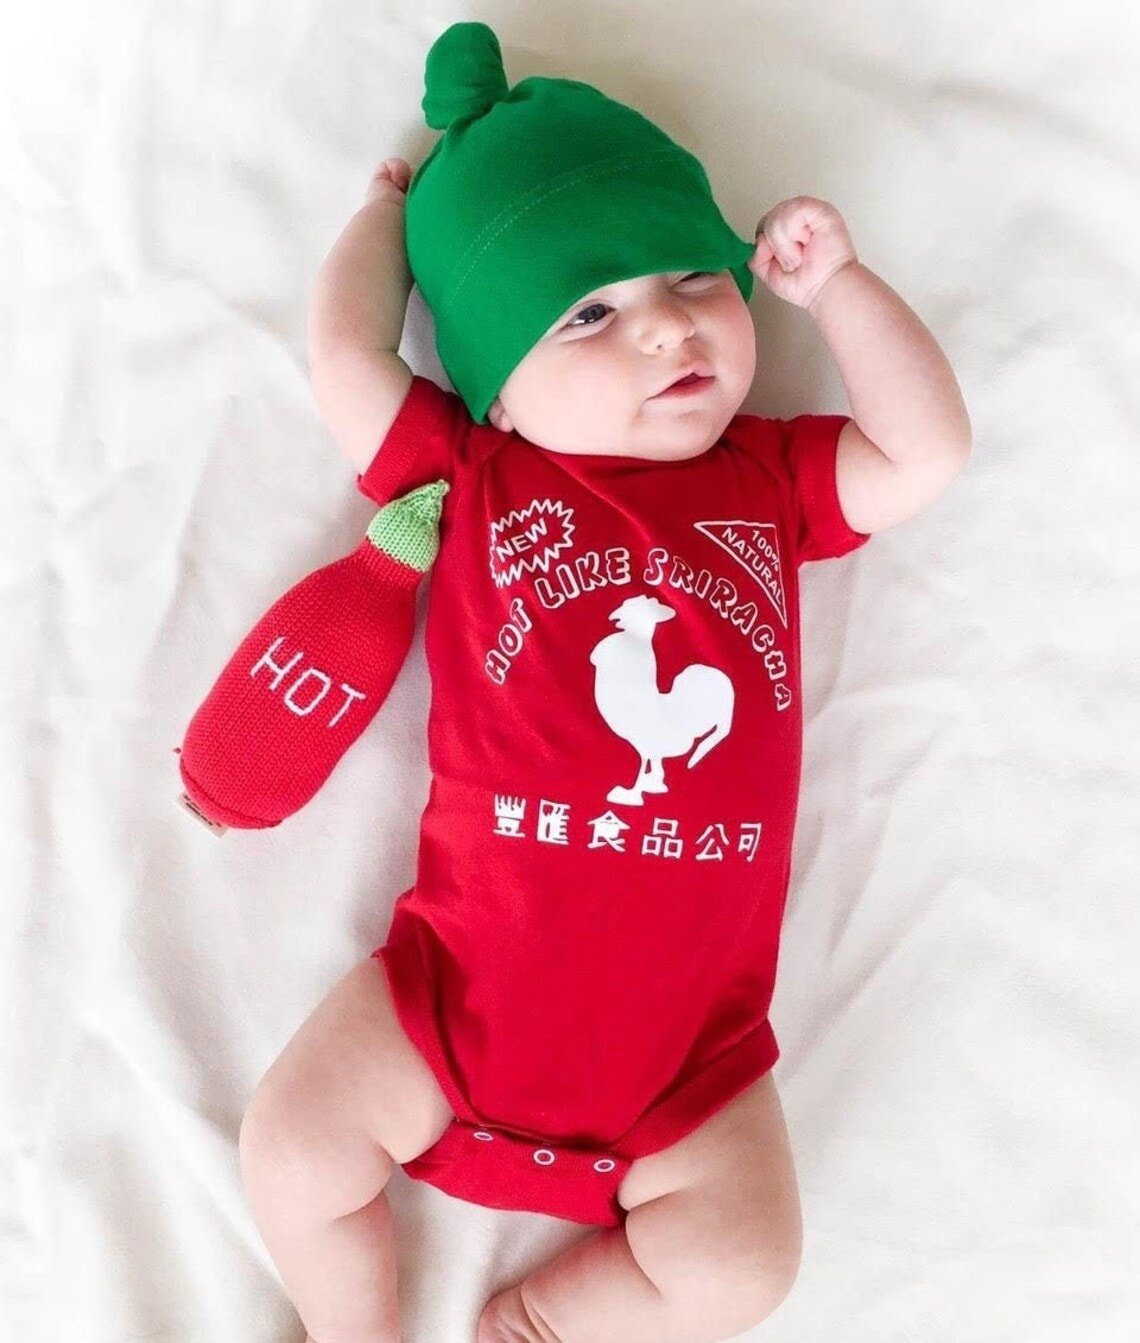 Sriracha baby costume